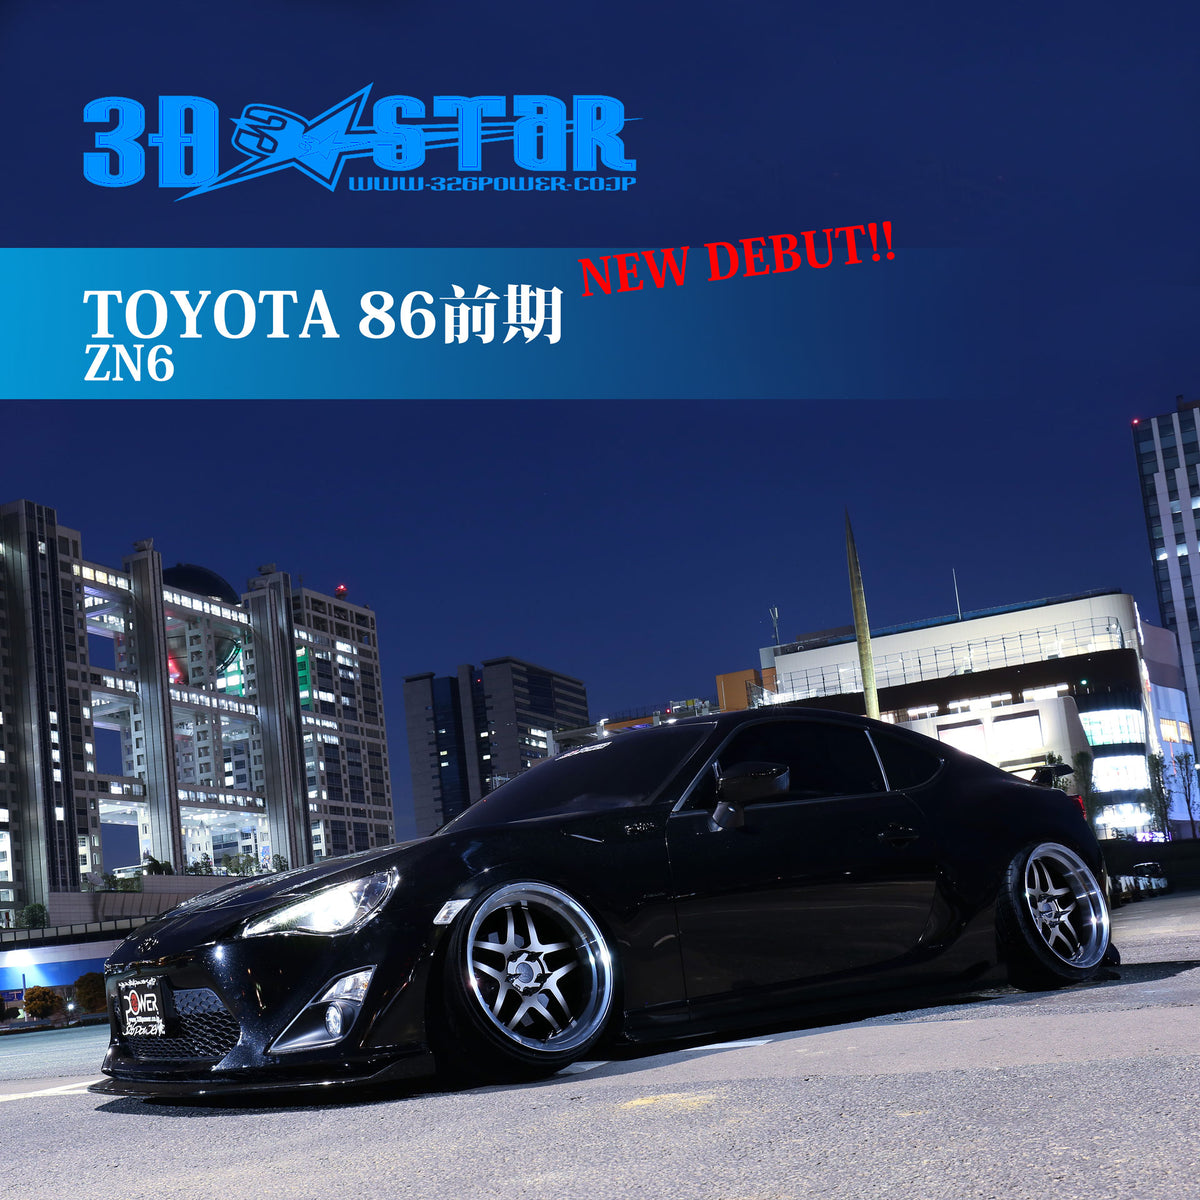 326POWER 3D STAR Lip Kit for Toyota GT86 (Zenki model 